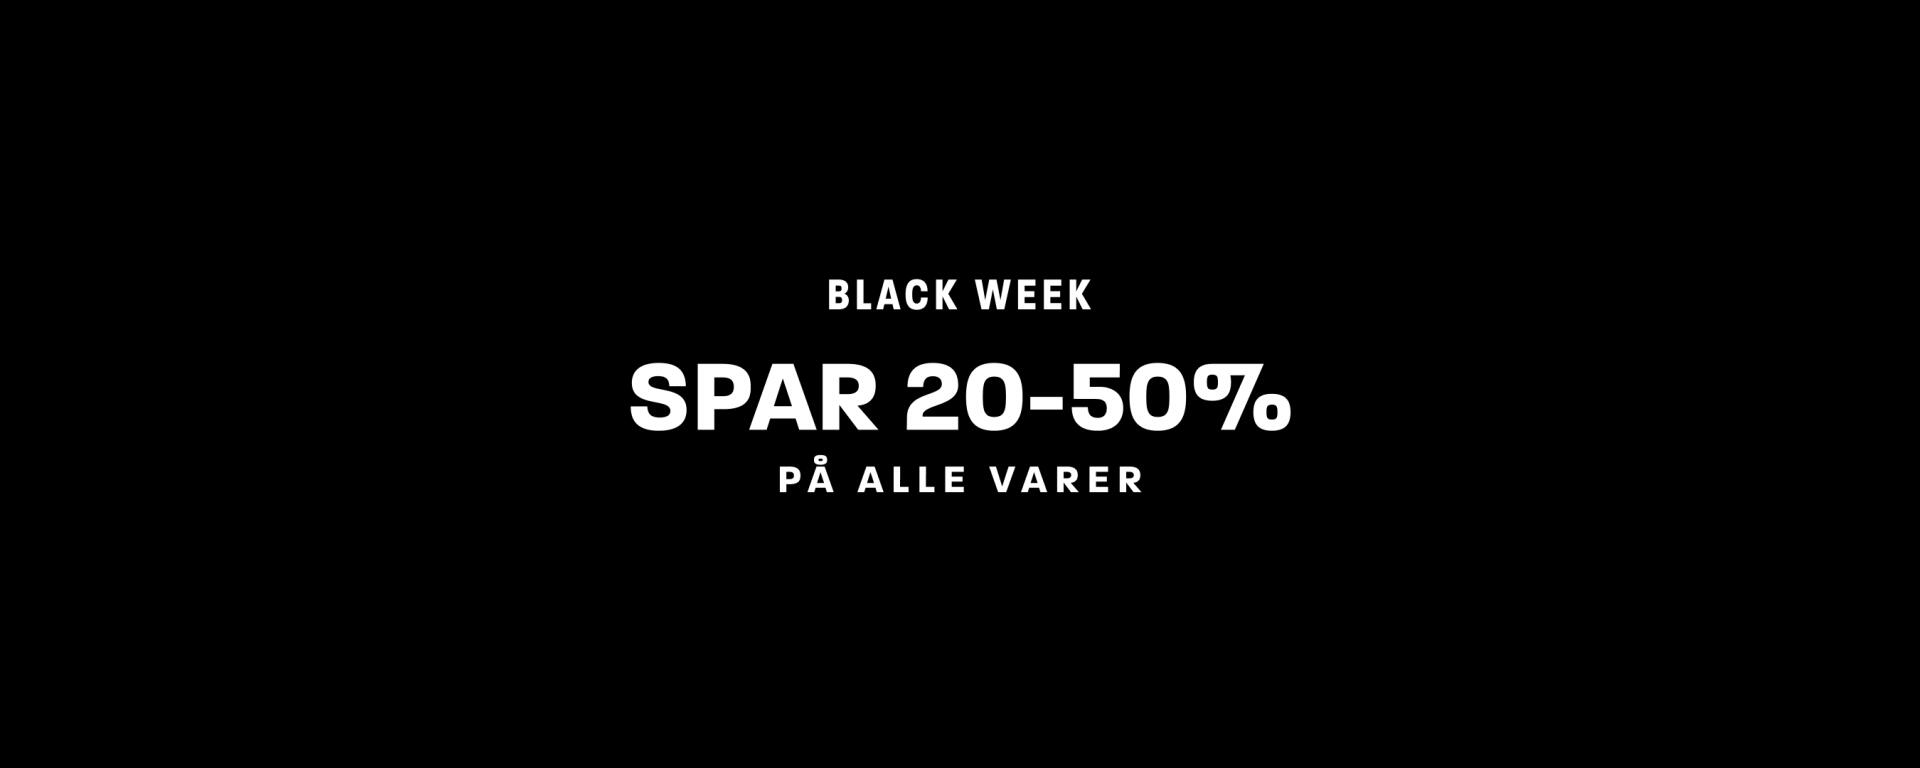 Black Week 20-50%